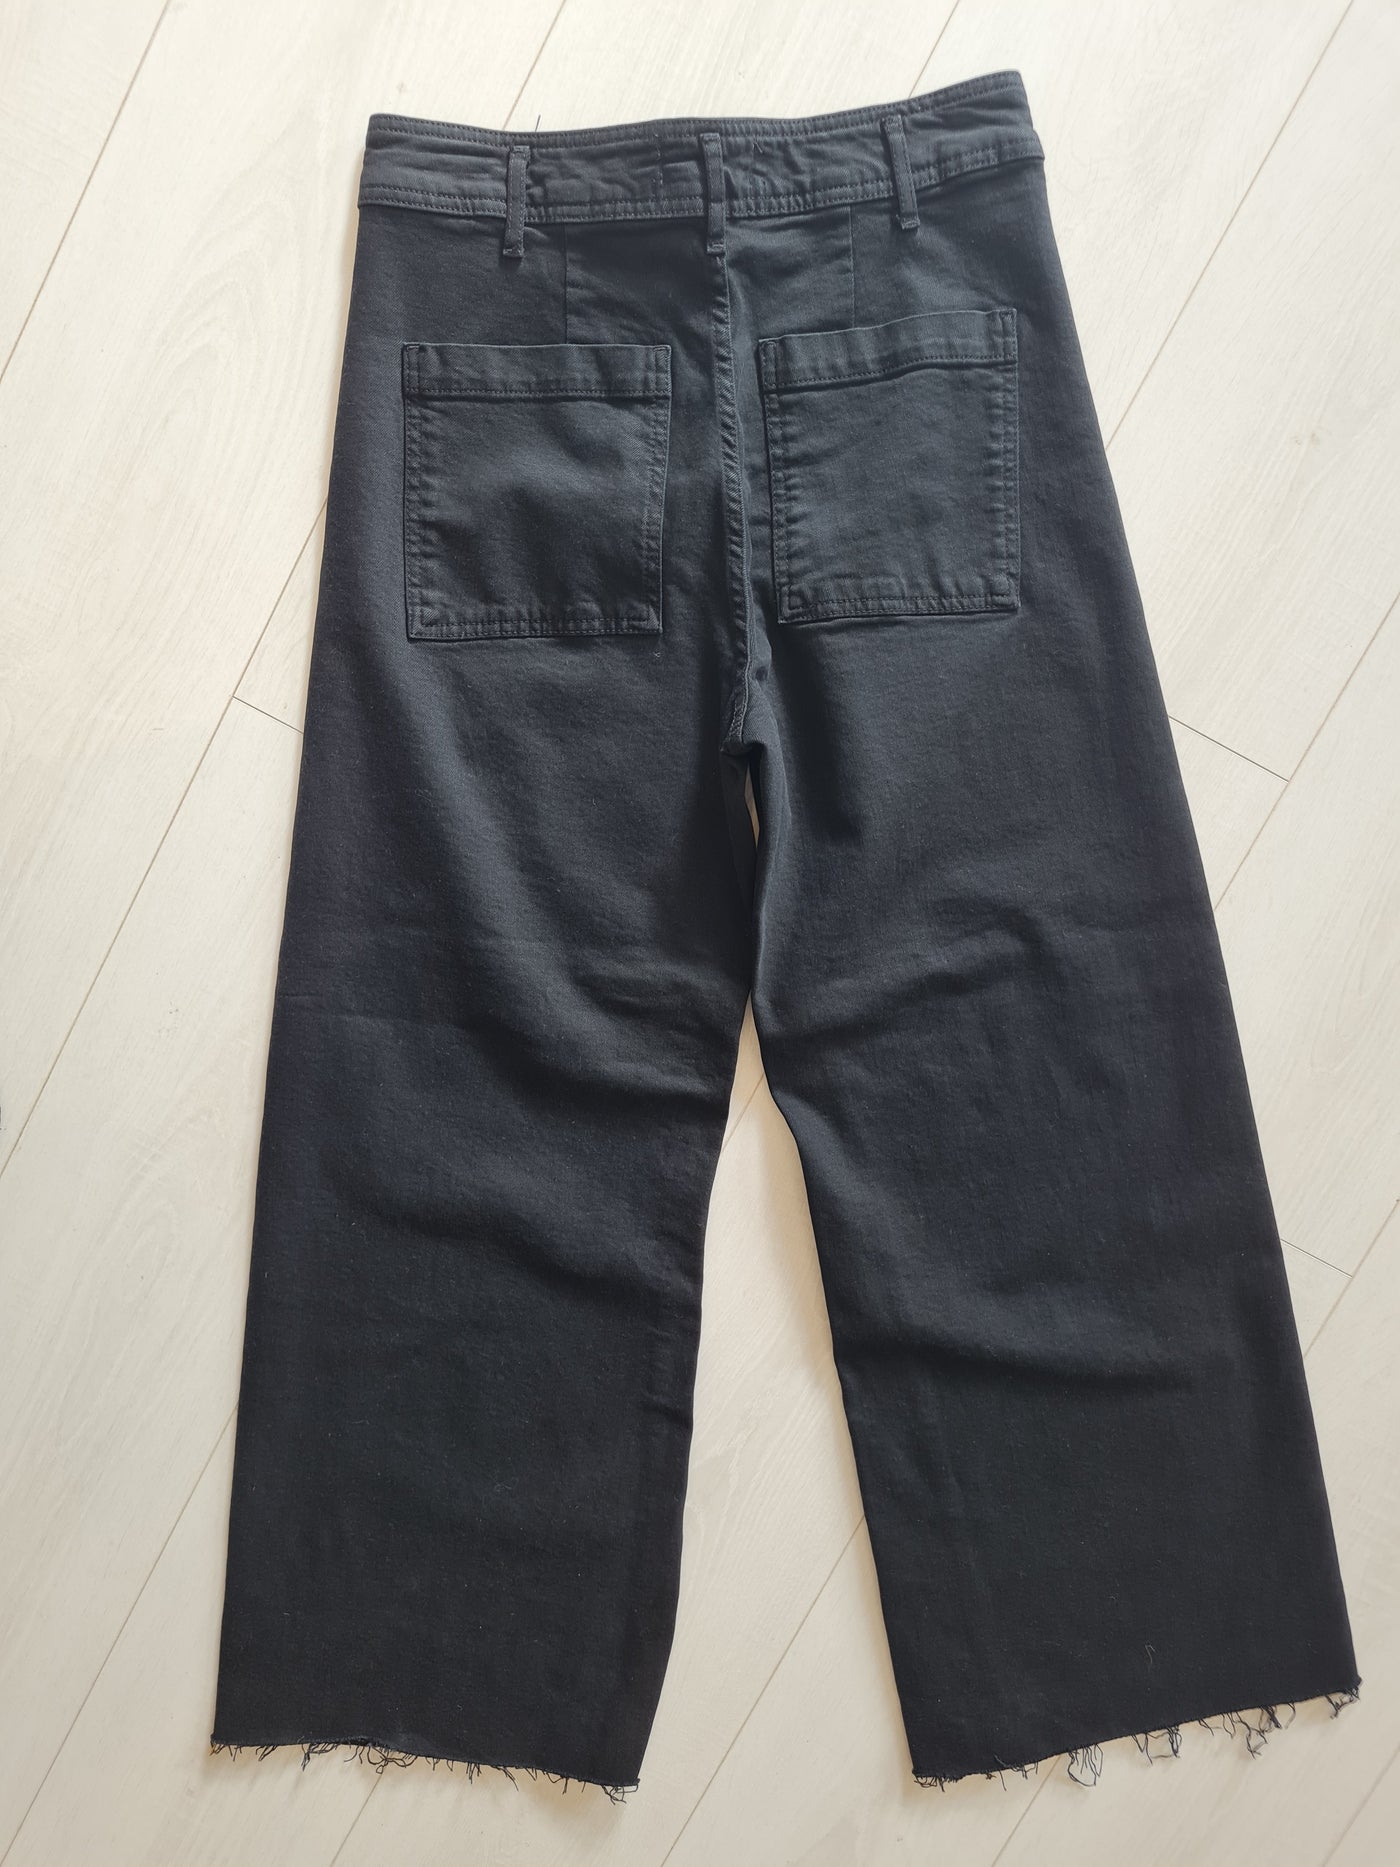 Zara black flared jeans 42